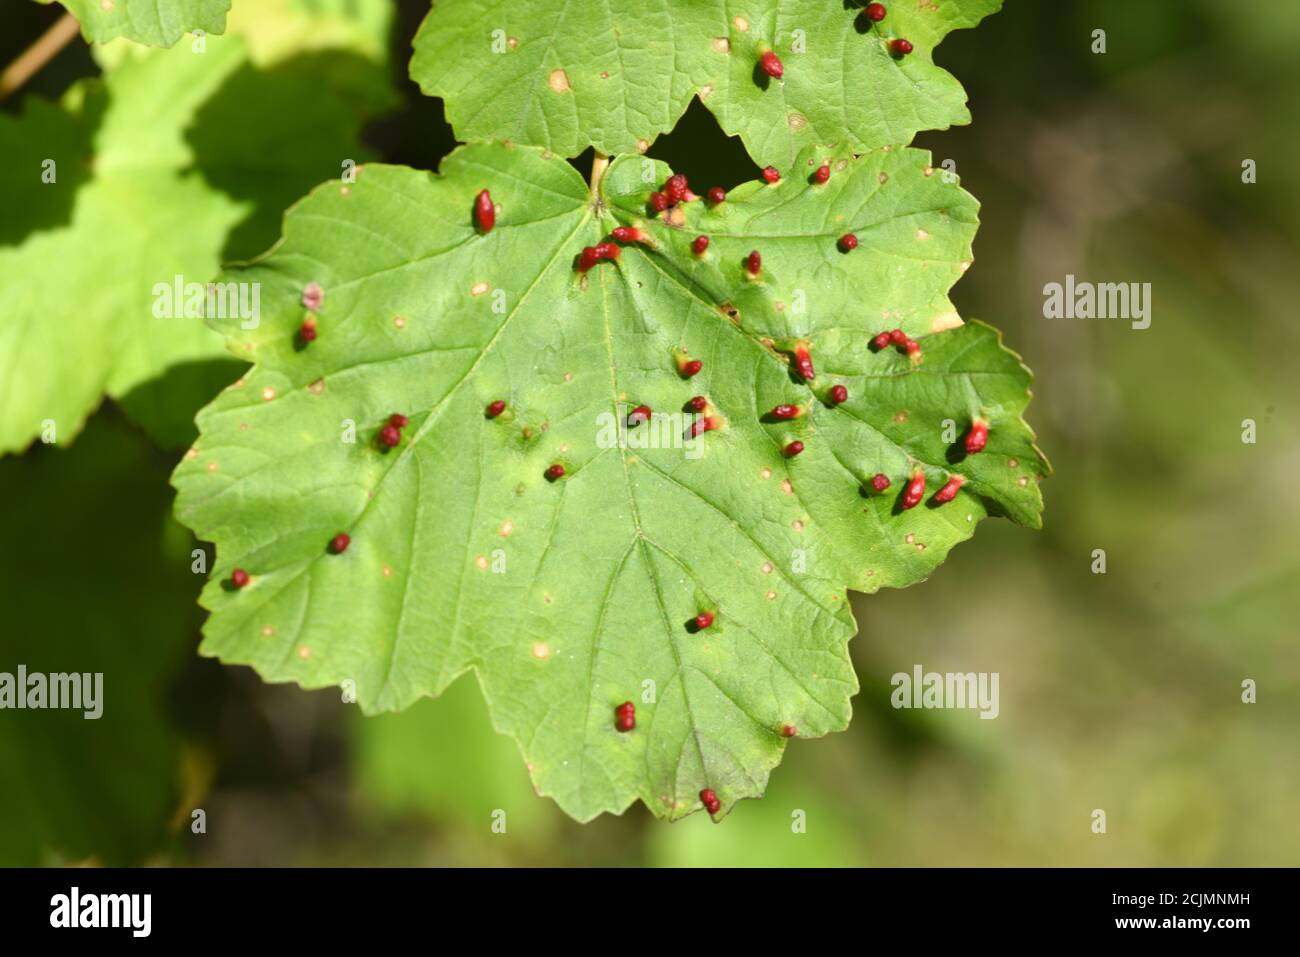 Lime Nail Galls verursacht durch die Milbe Eriophytes tiliae tiliae Auf dem Blatt der Linde oder Lindenbaum Tilia europea Stockfoto